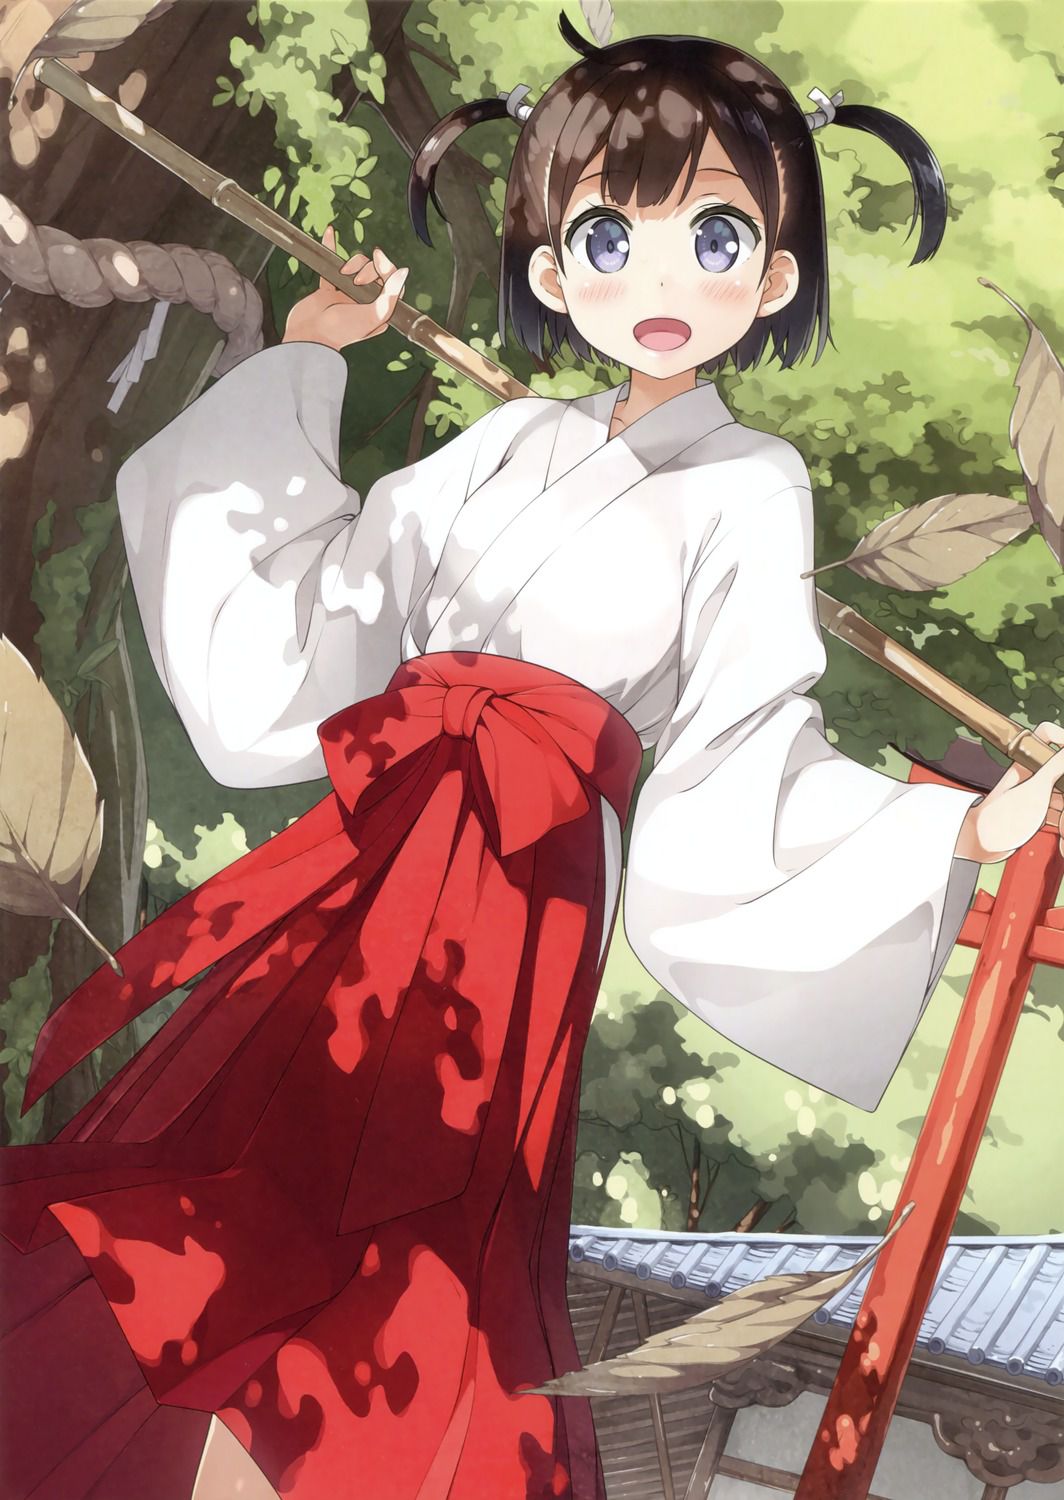 Cute kimono and yukata erotic picture post! 5